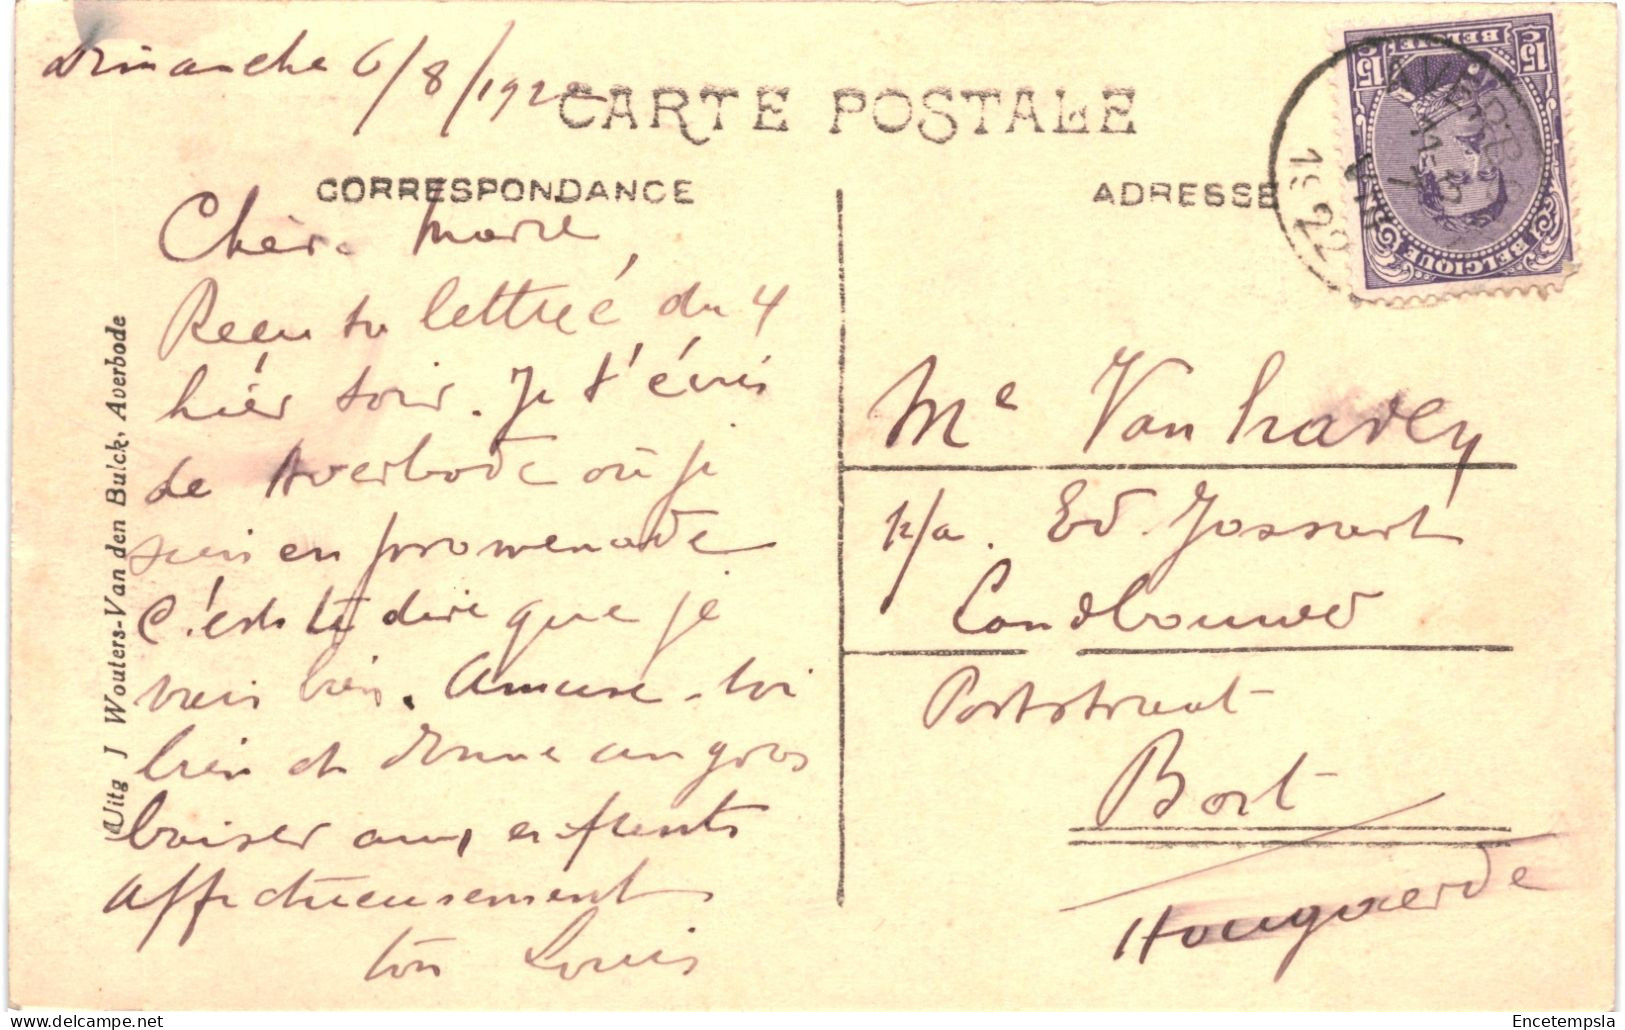 CPA Carte Postale Belgique Averbode Vue Générale De L'Abbaye 1922 VM79663 - Scherpenheuvel-Zichem